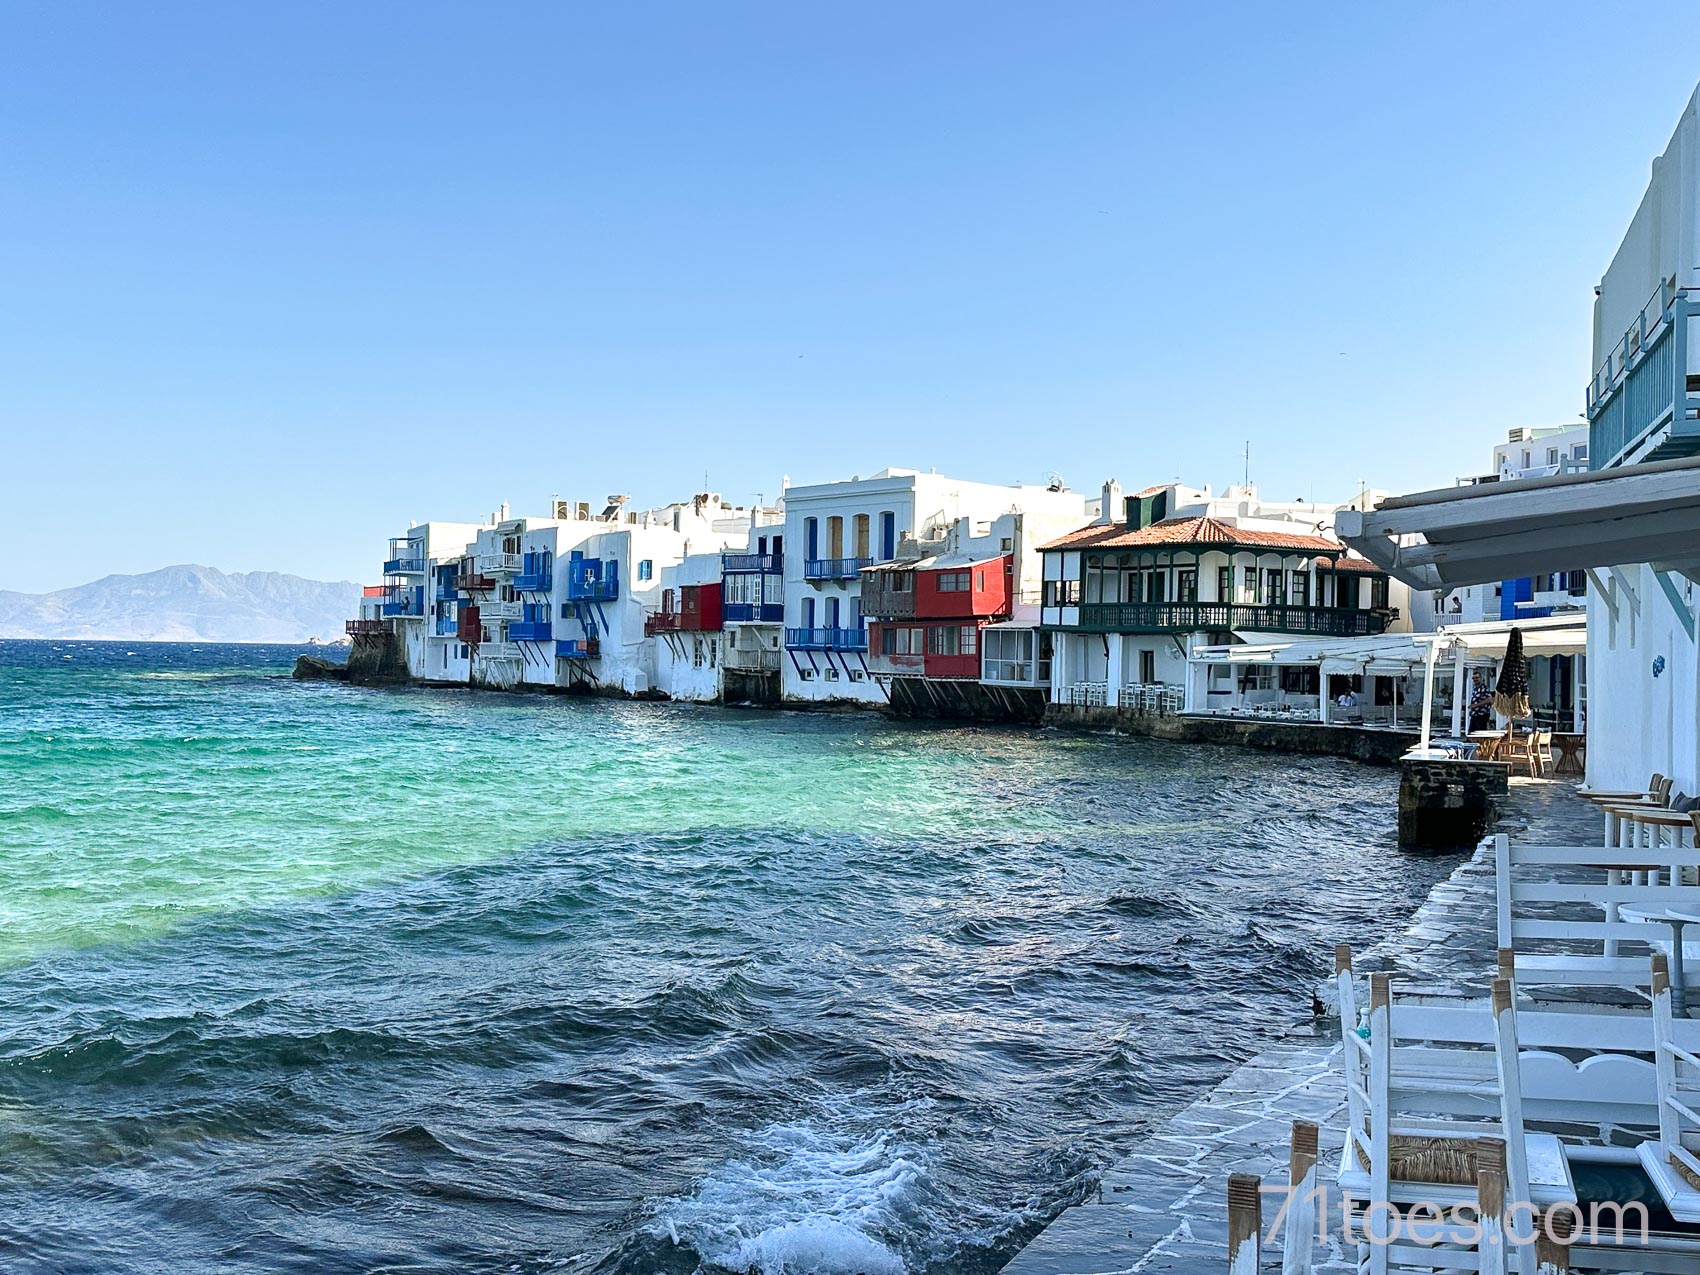 A view of "Little Venice" in Mykonos